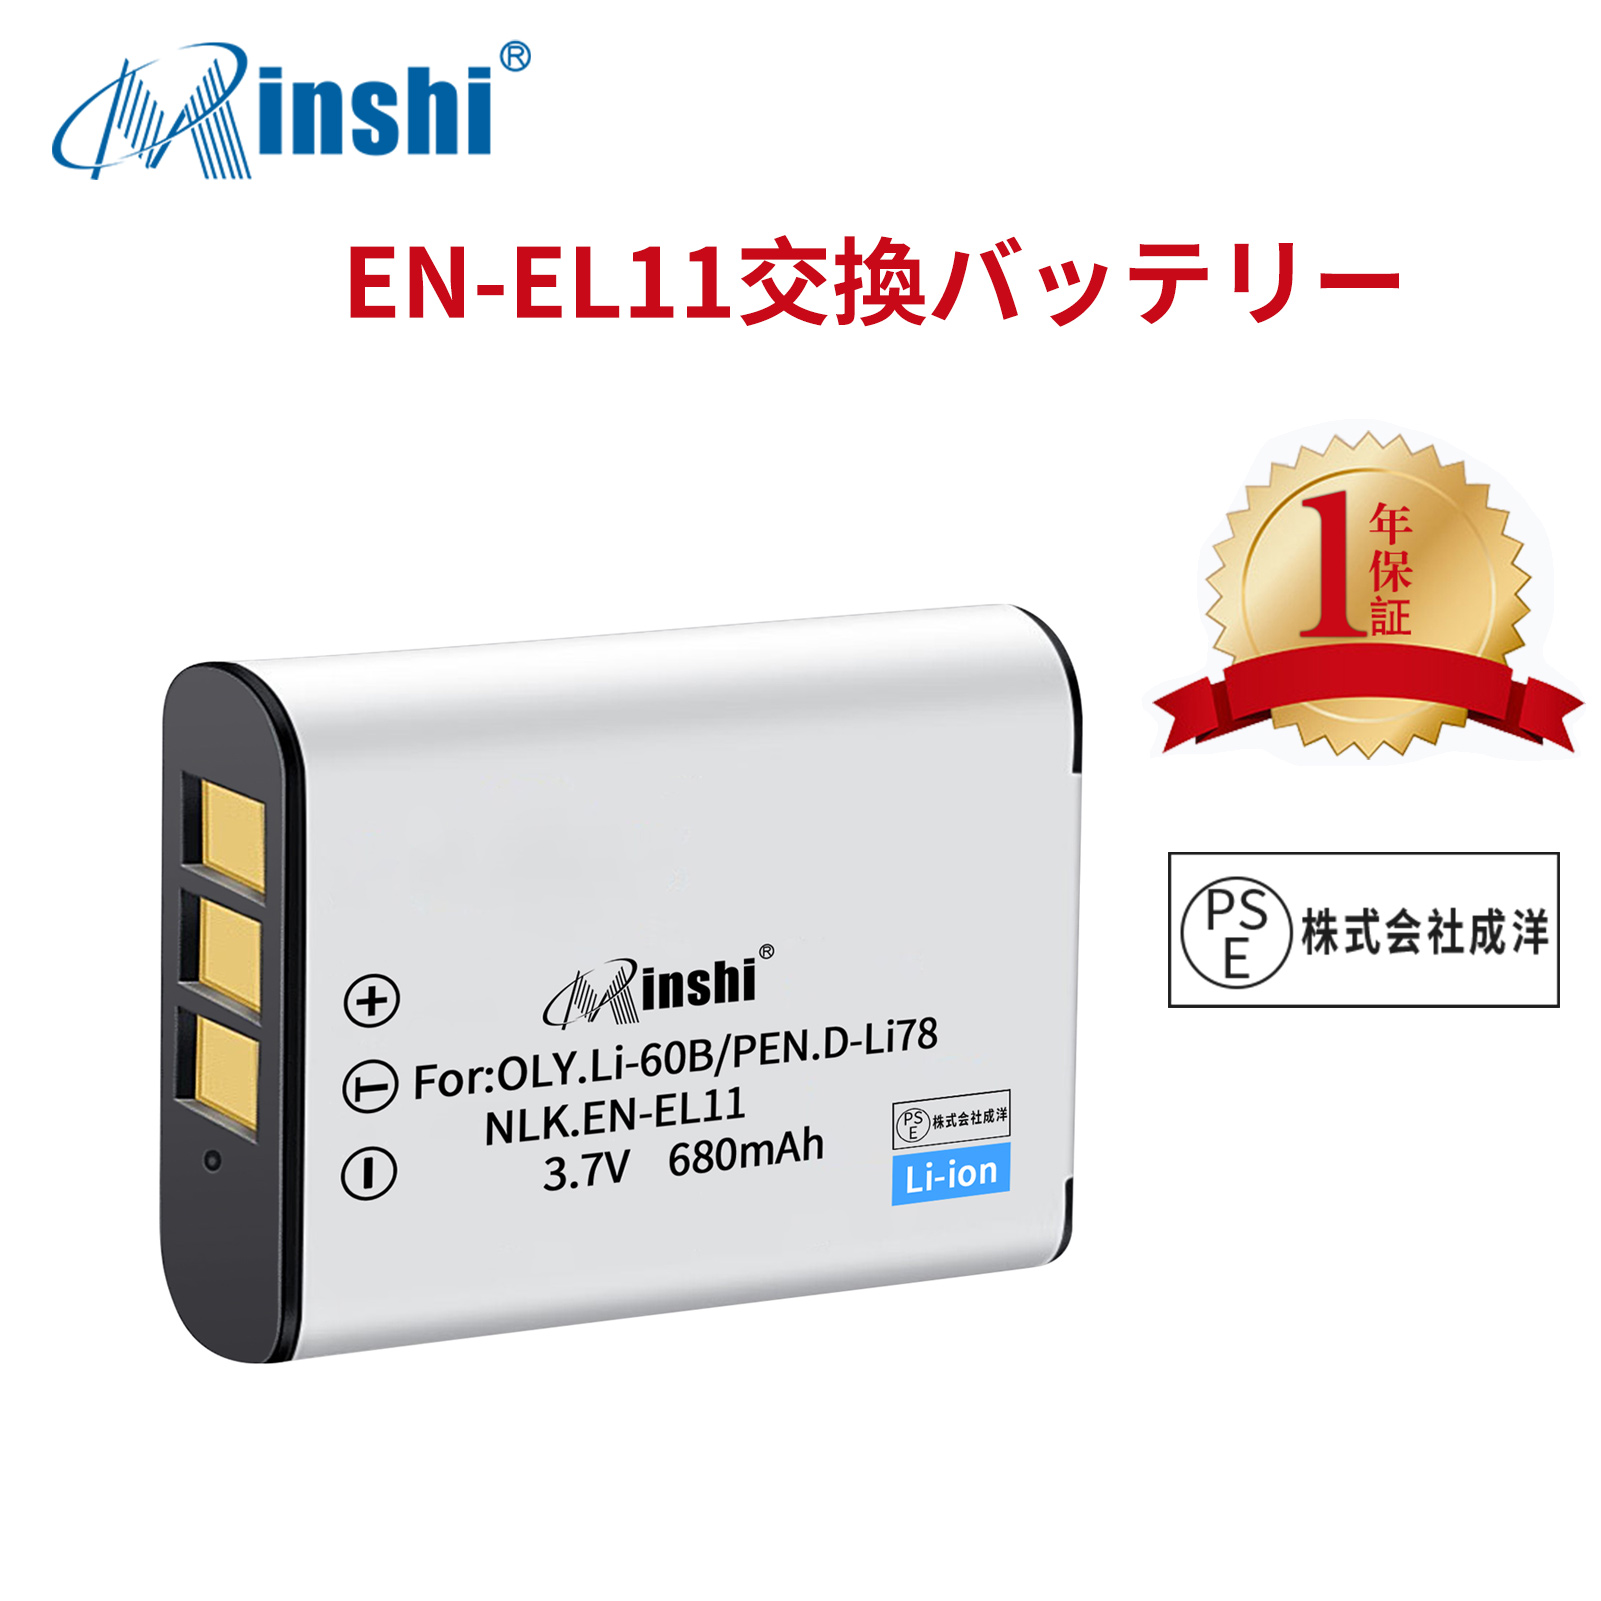 【1年保証】minshi NIKON Optio W80 EN-EL11 【680mAh 3.7V】PSE認定済 高品質交換用バッテリー オリジナル充電器との互換性がない